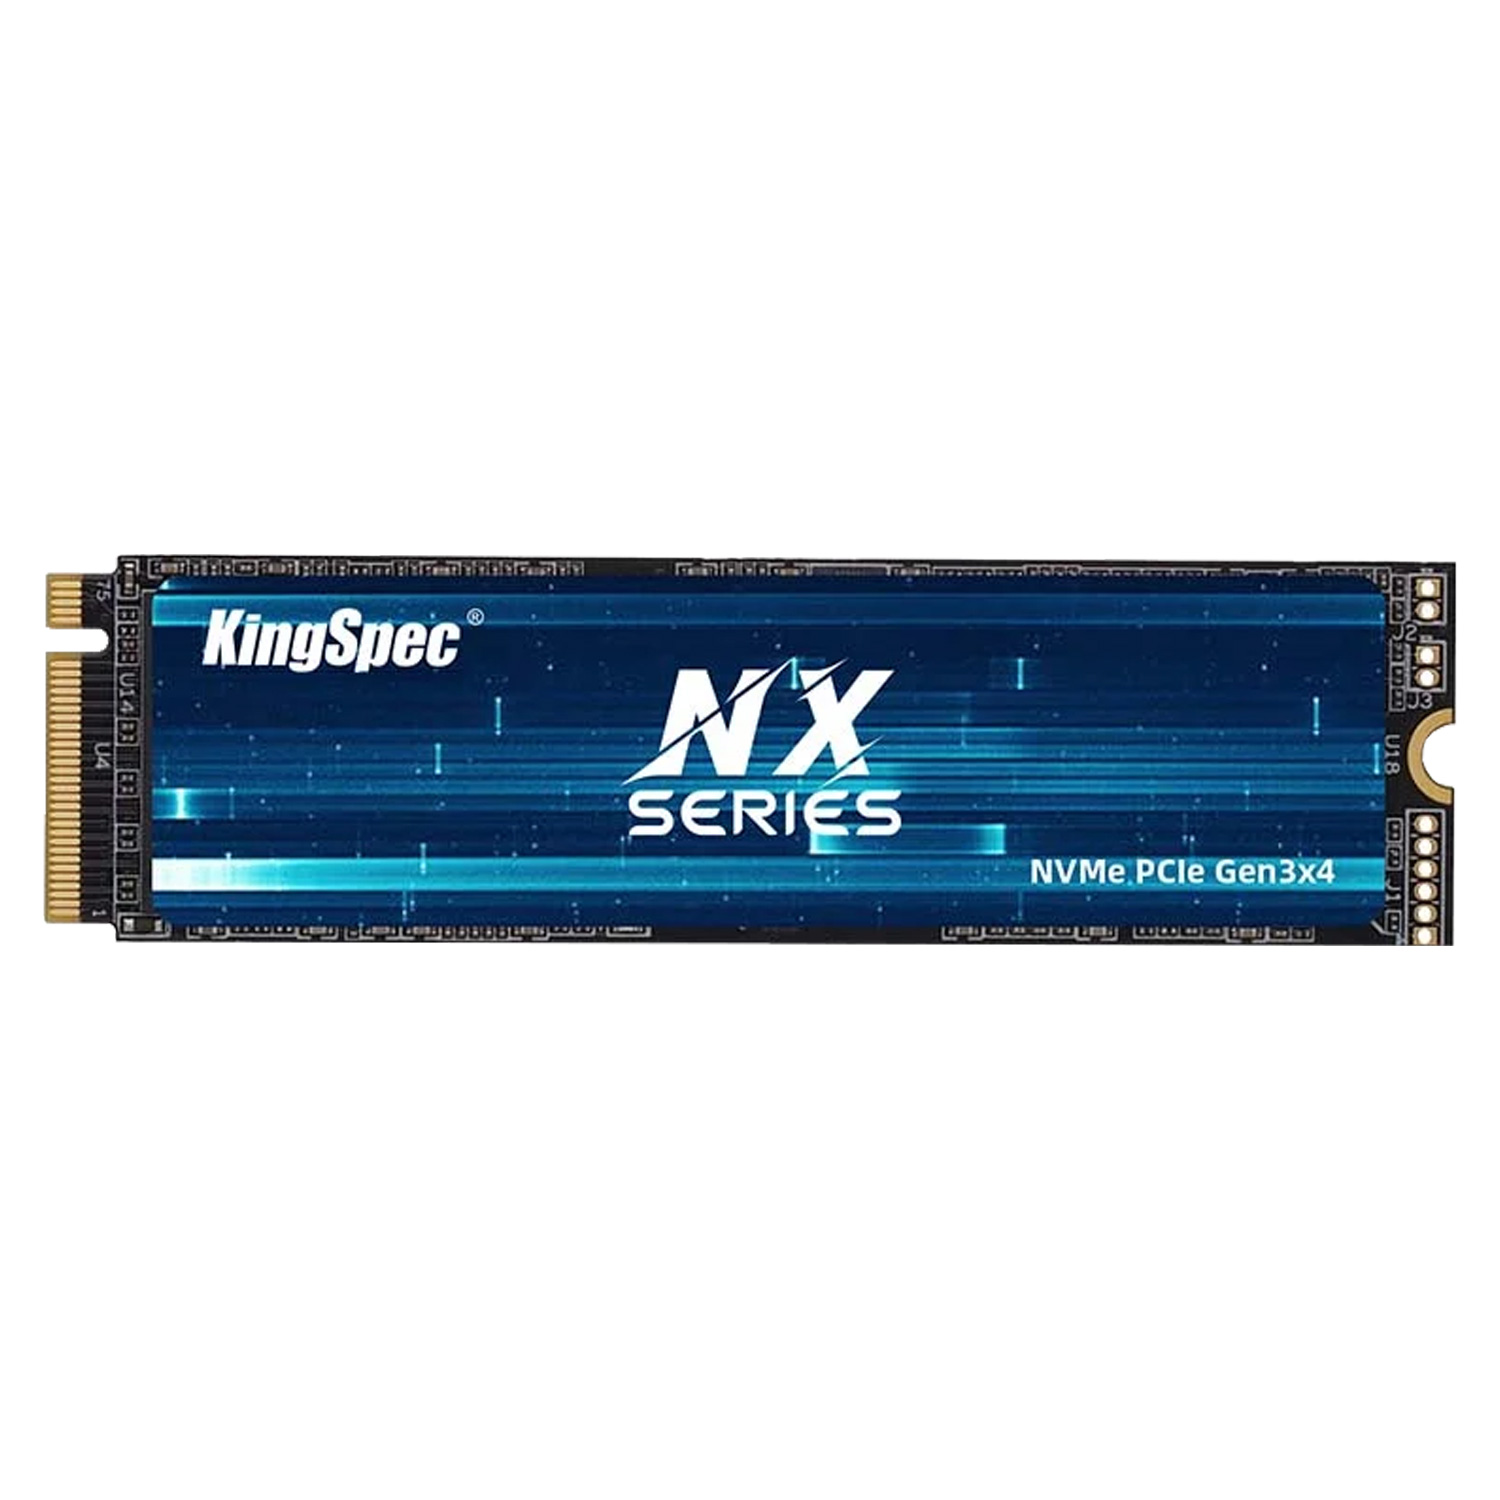 SSD M.2 KingSpec 256GB / Gen 3 / NVME - (NX-256)
